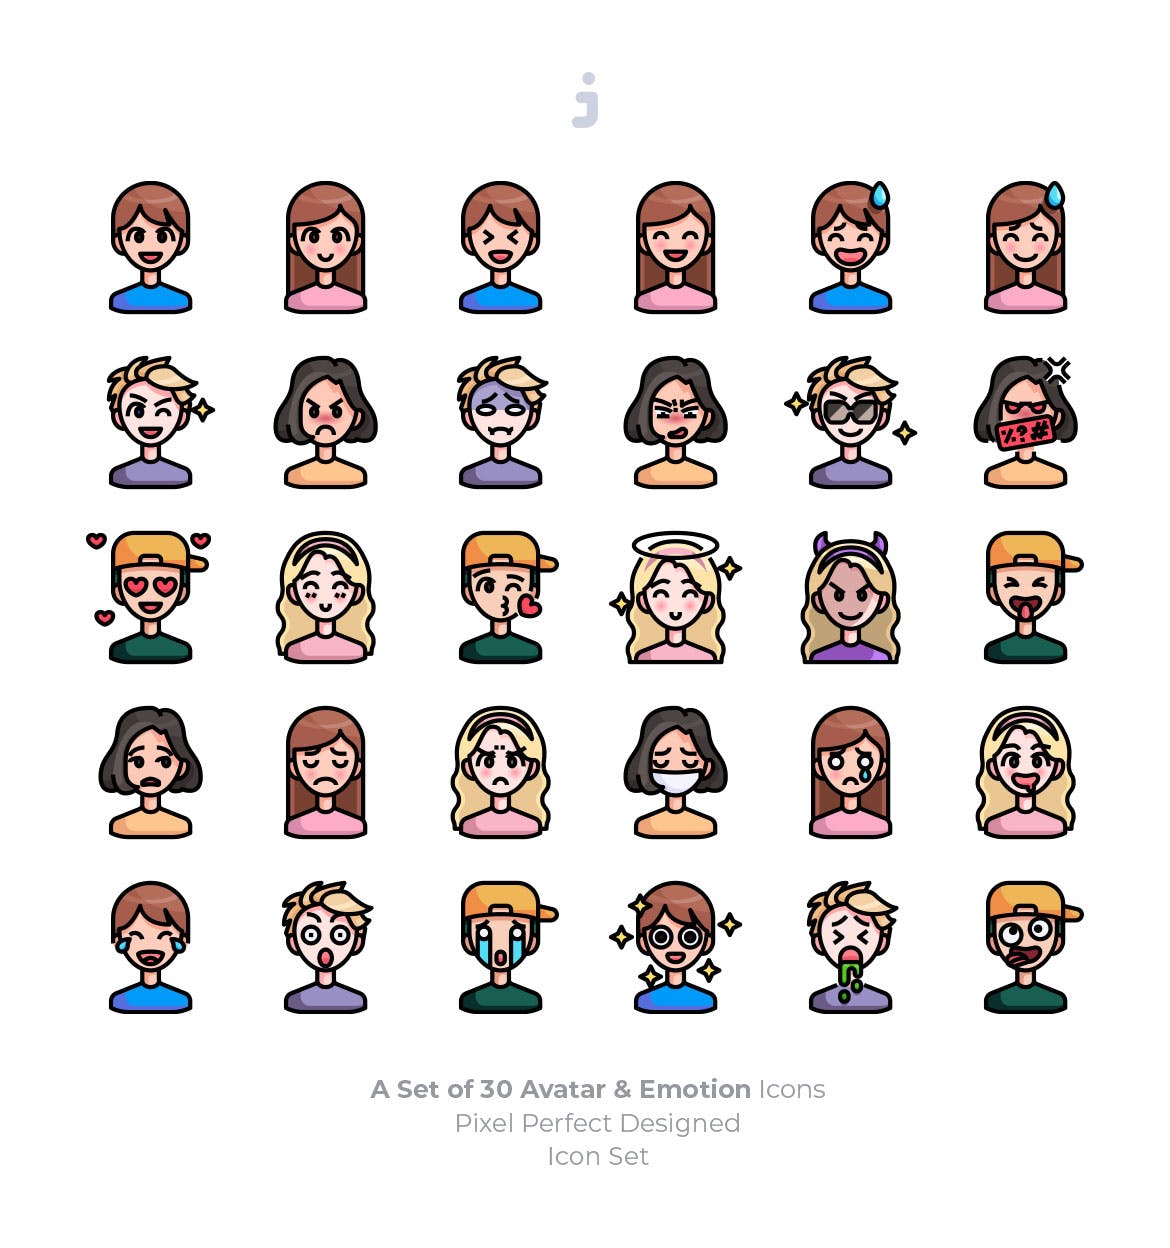 30枚彩色人物头像&表情矢量第一素材精选图标 30 Avatar and Emotion Icons插图(1)